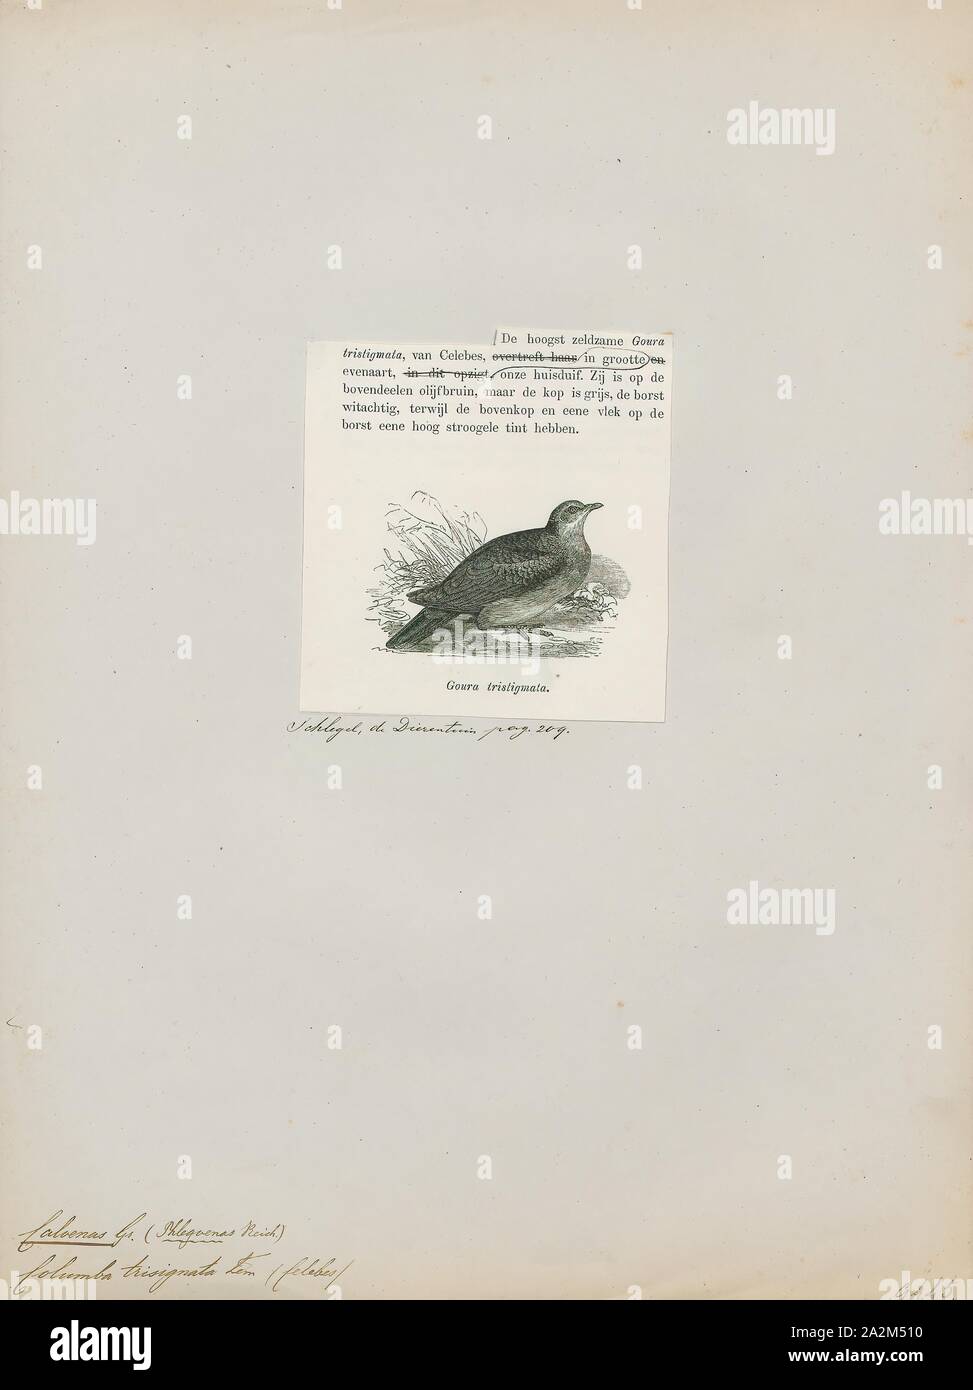 Caloenas trisignata, Drucken, Caloenas ist eine Gattung der Tauben. Der einzige lebende Arten ist die Kragentaube (C. nicobarica)., 1872 Stockfoto